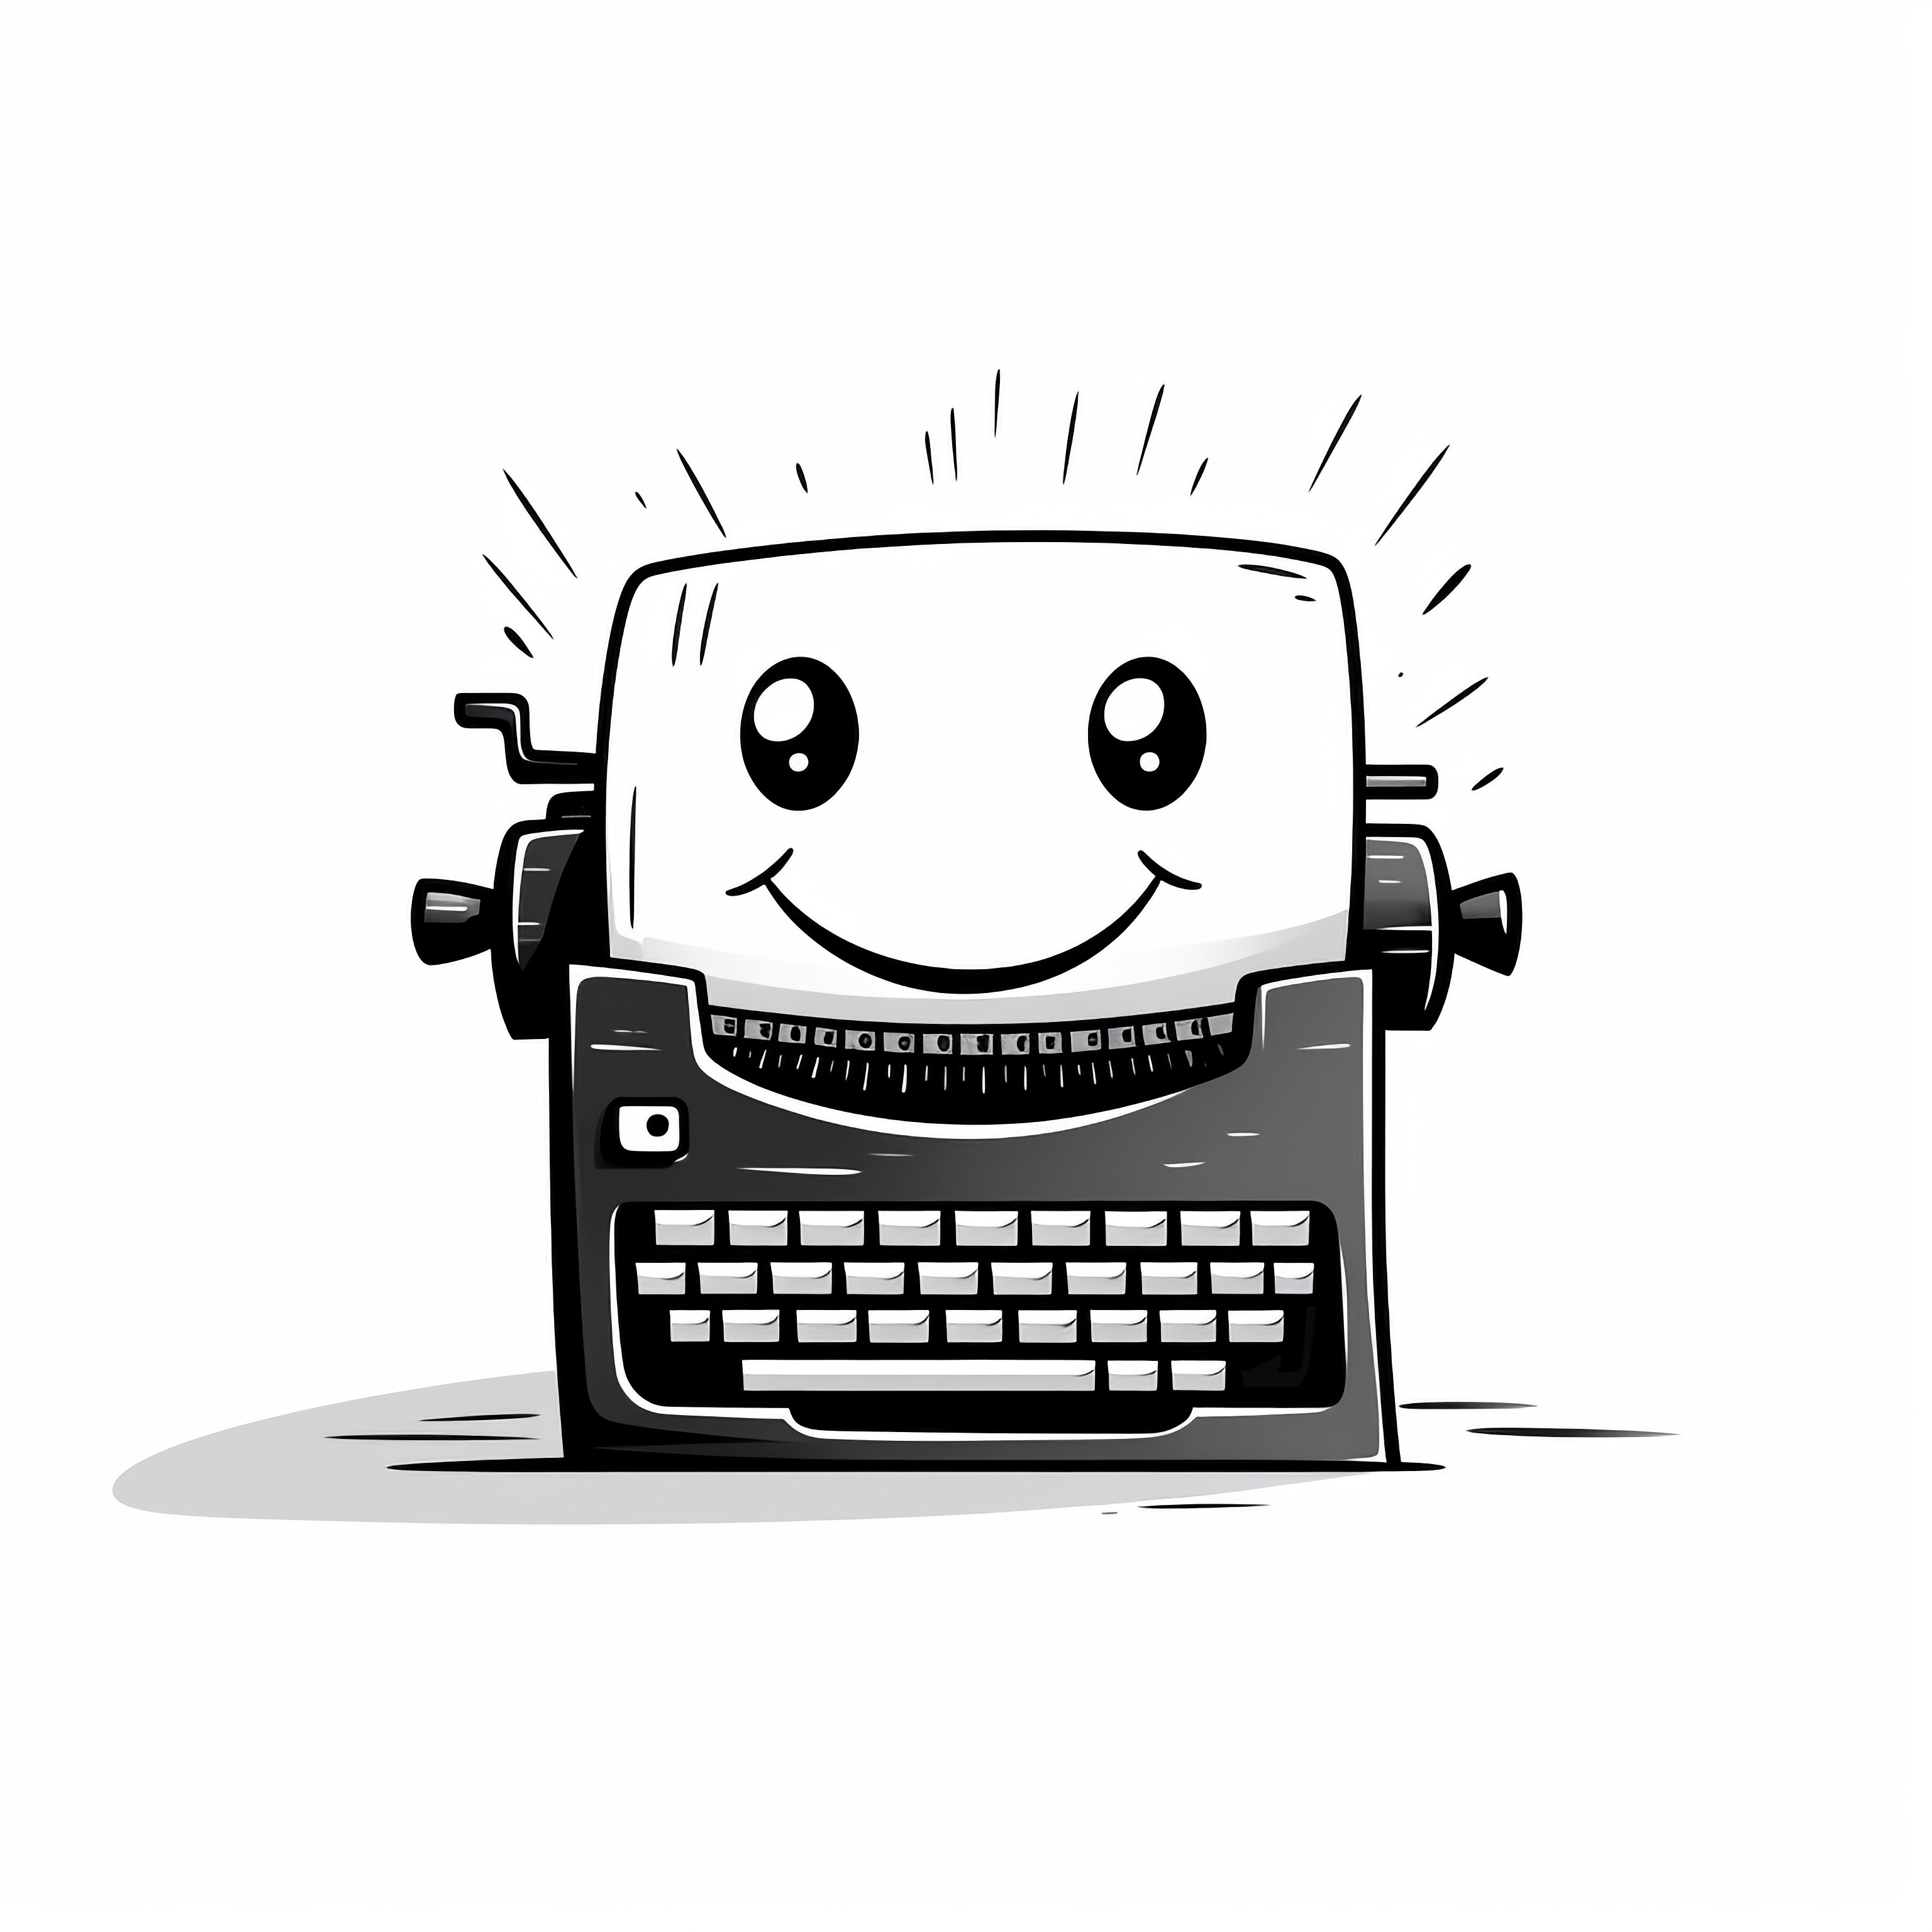 Eine freundliche Schreibmaschine, die uns anlächelt.